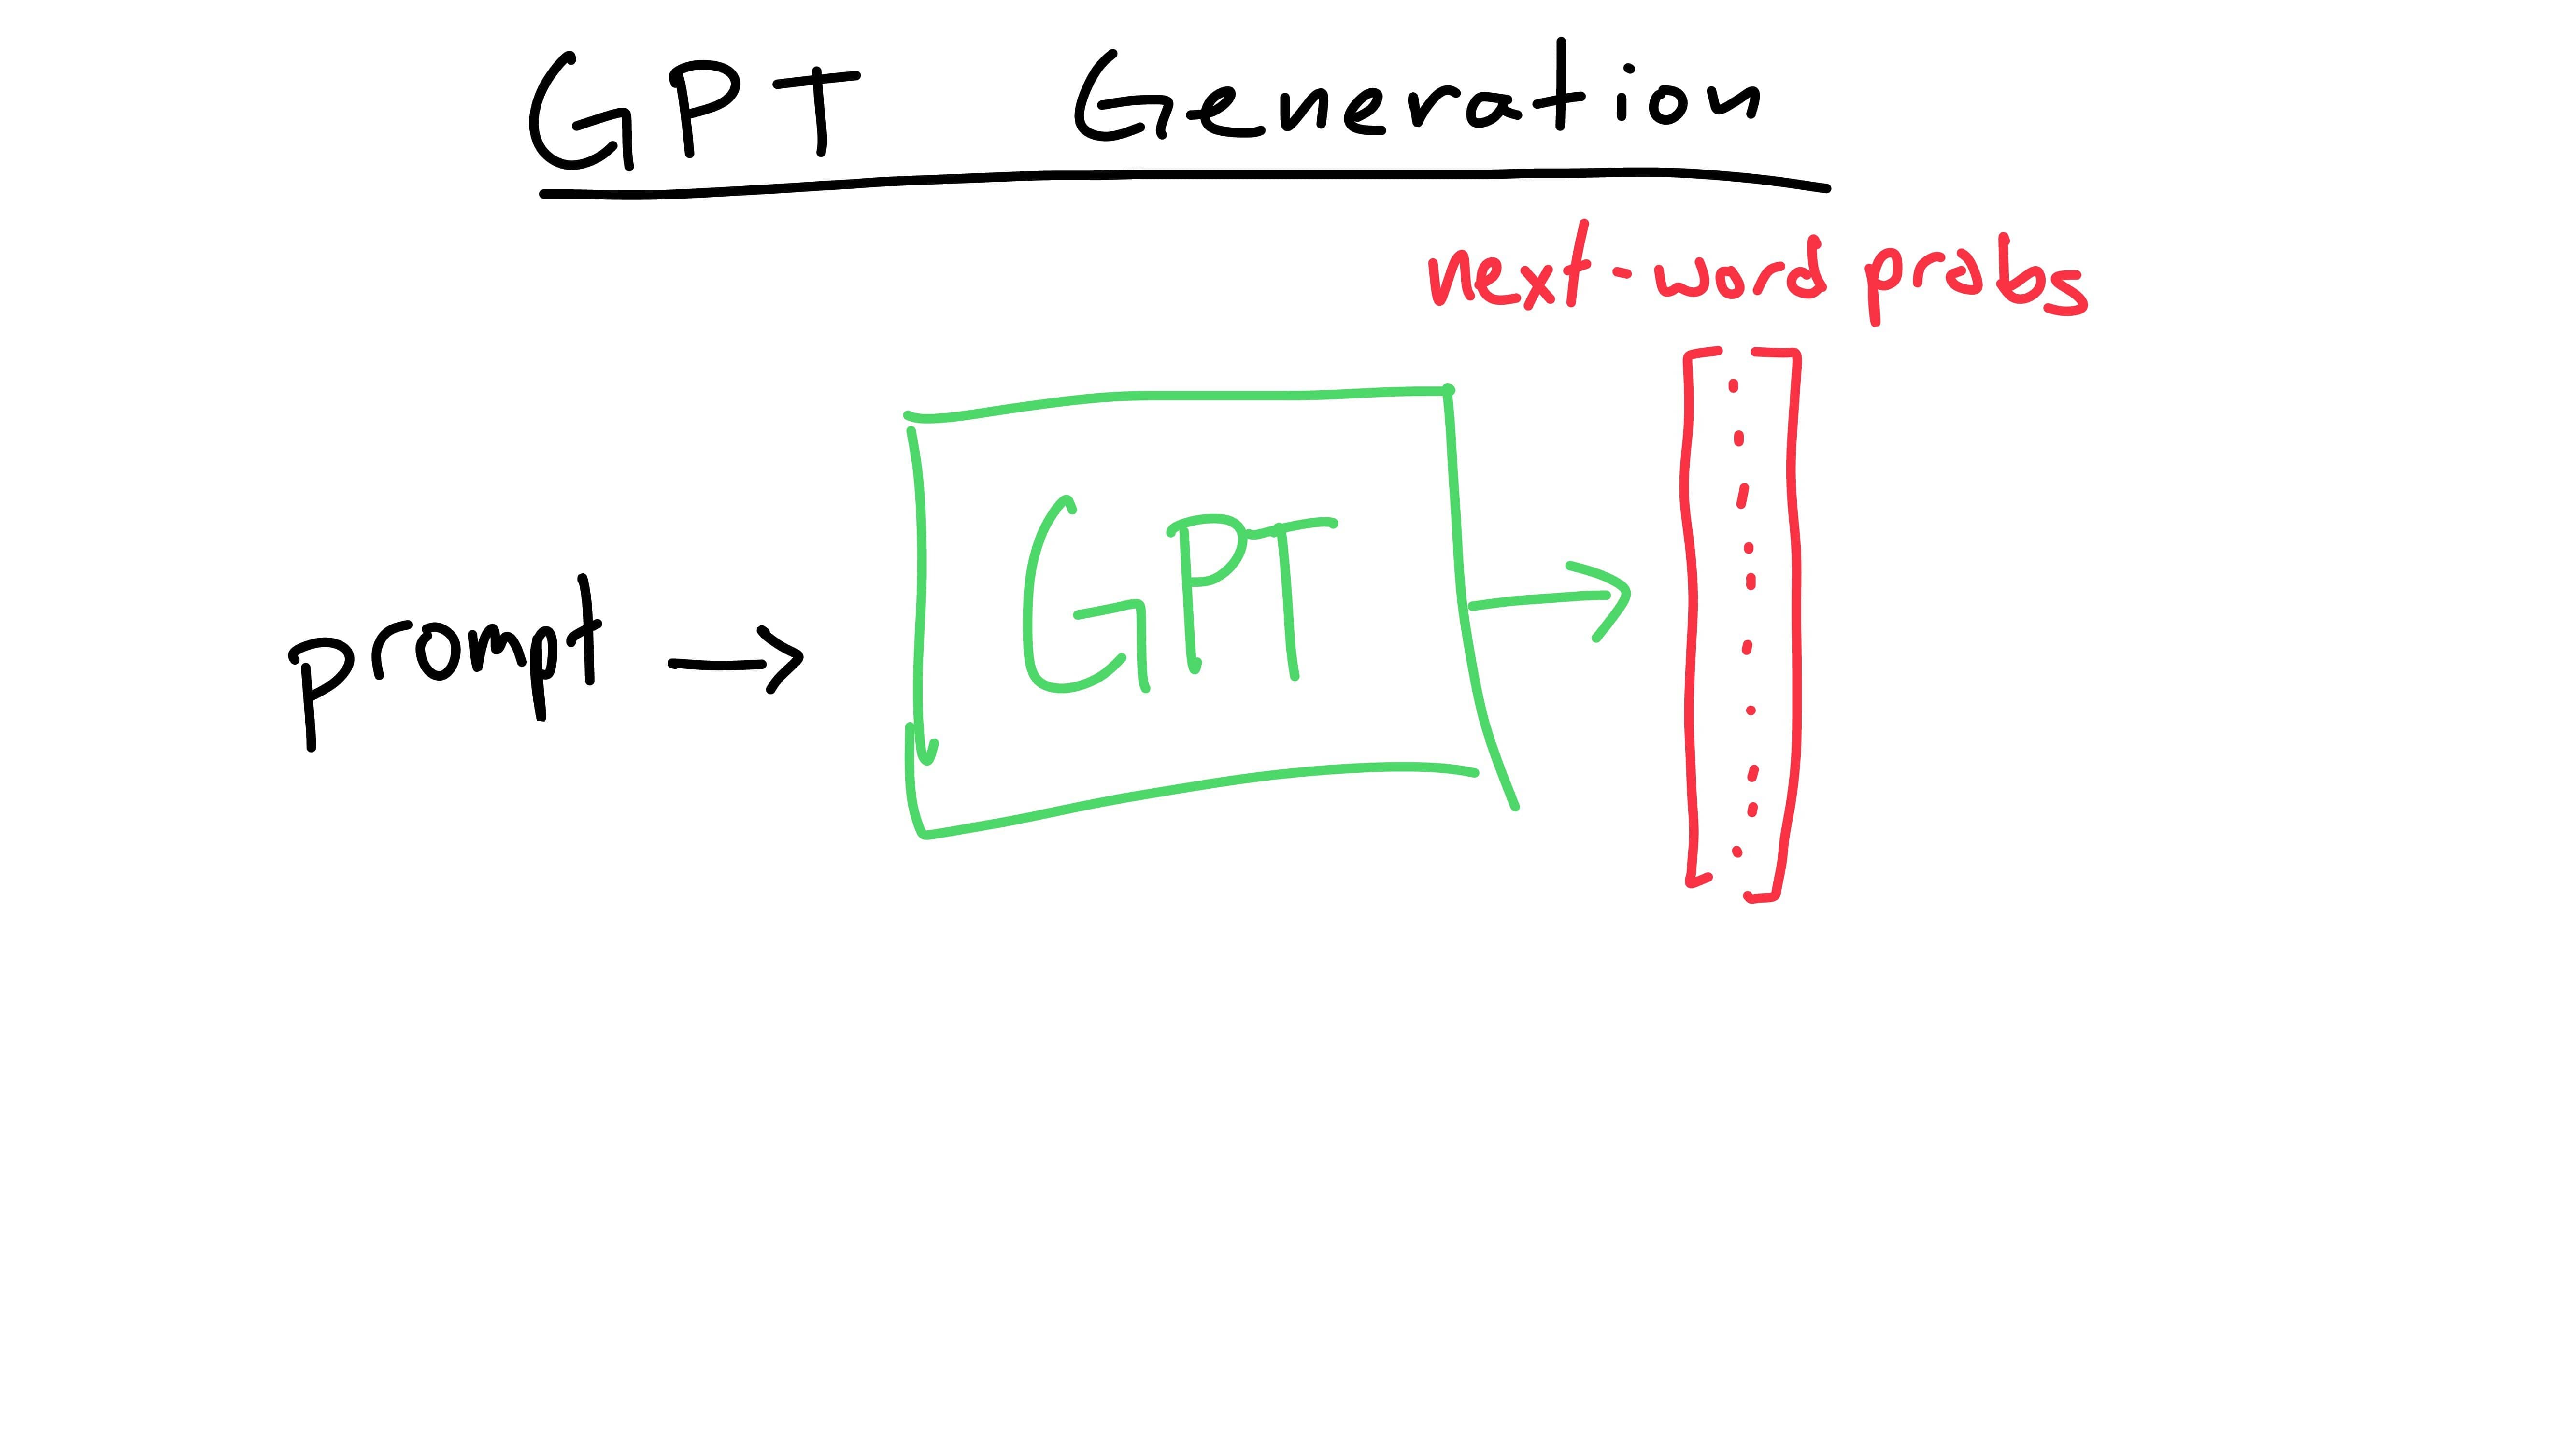 GPT probabilities